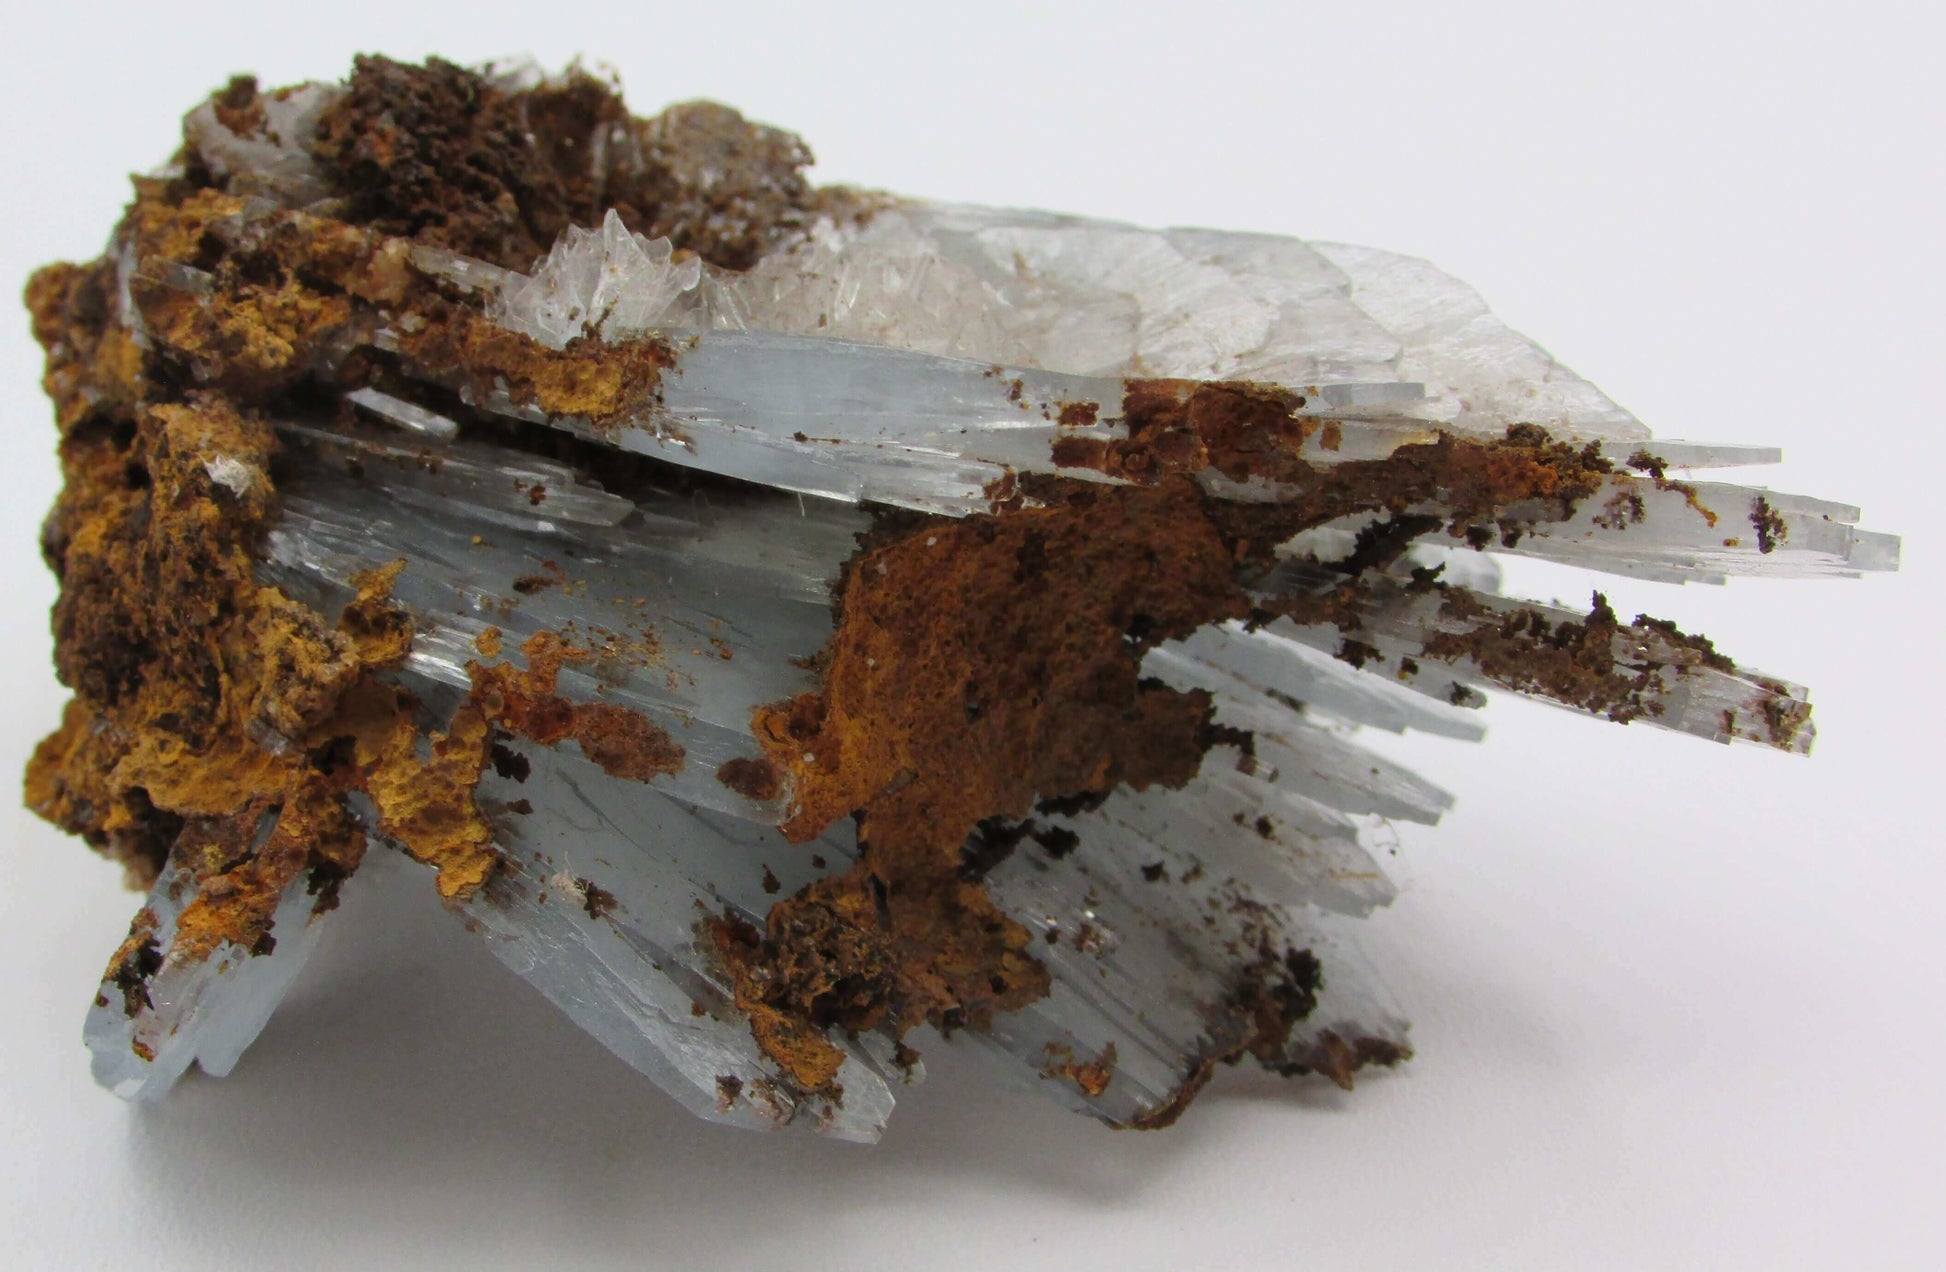 Blue Barite Crystal Specimen, Rare Natural Barite Morocco